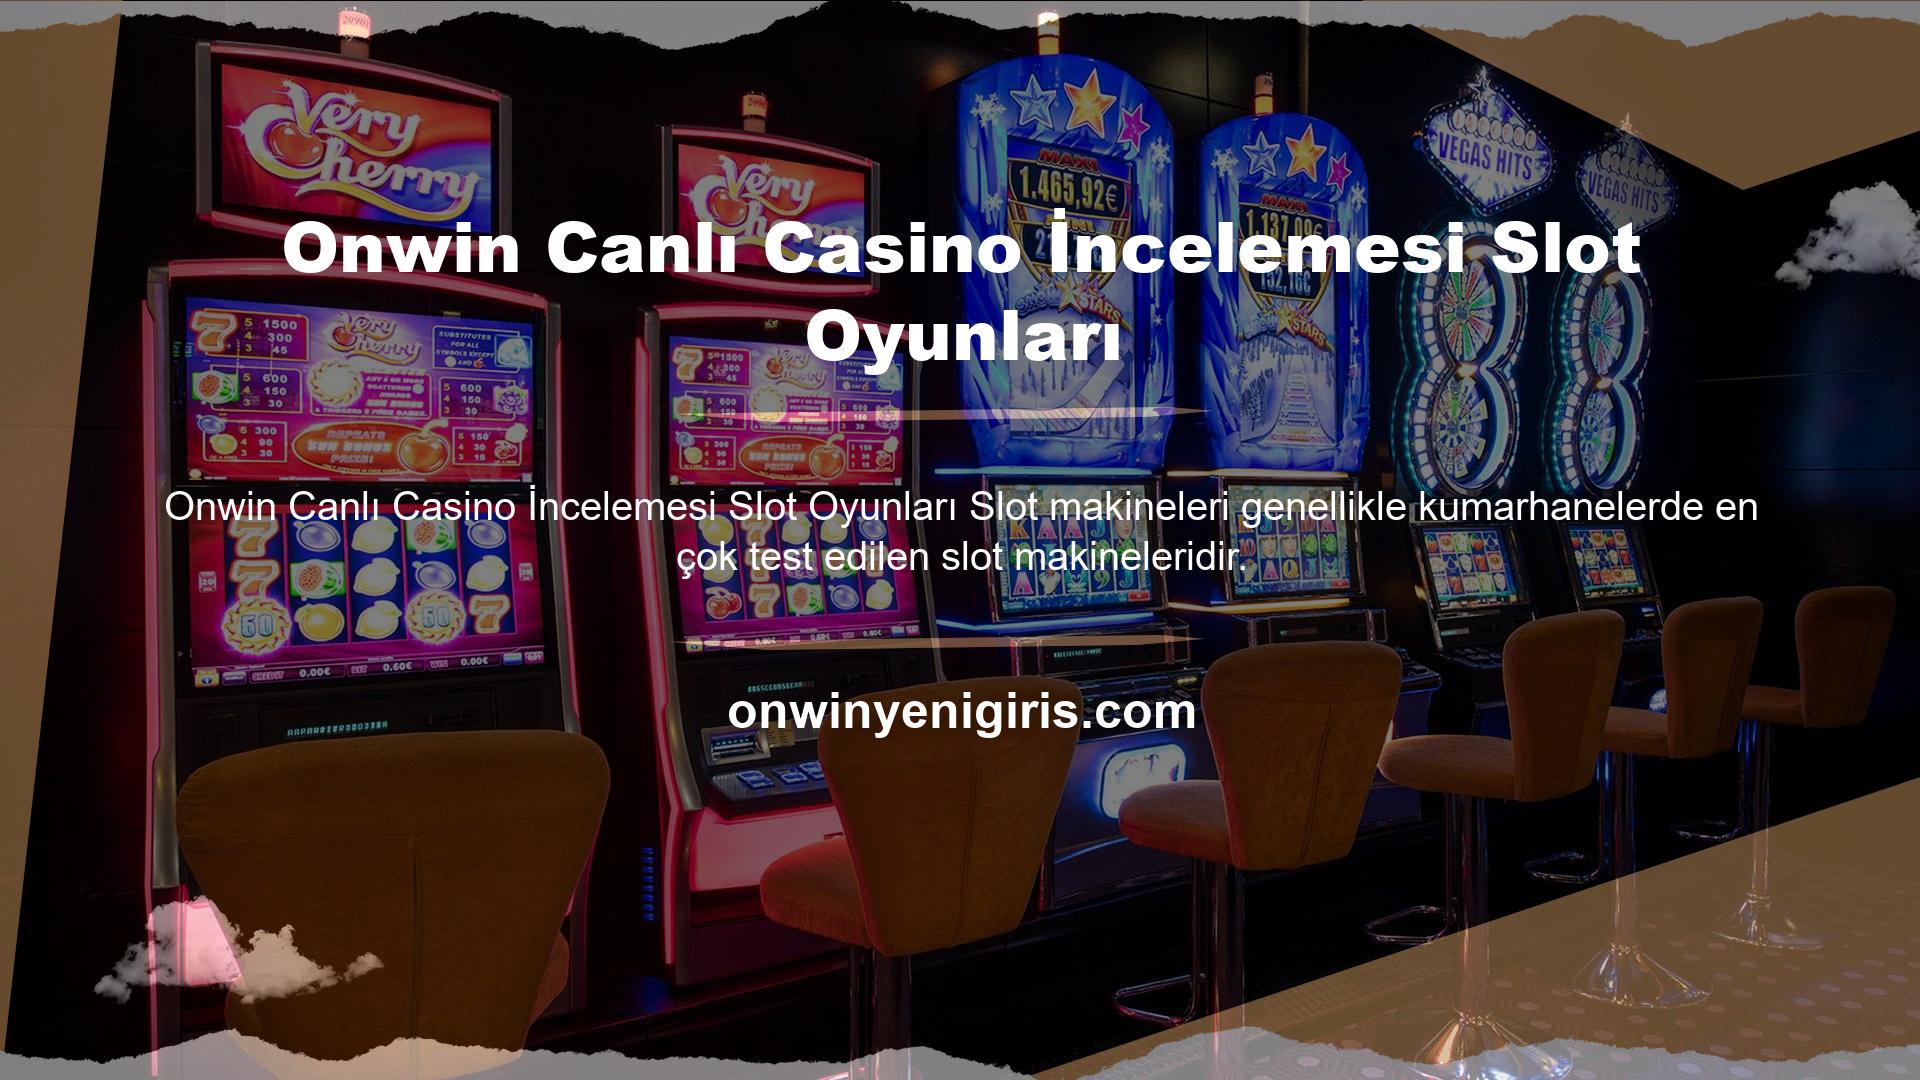 Fakat casino bir okyanus bölgesi olduğu için sitede pek çok farklı oyun içeriği bulunmaktadır